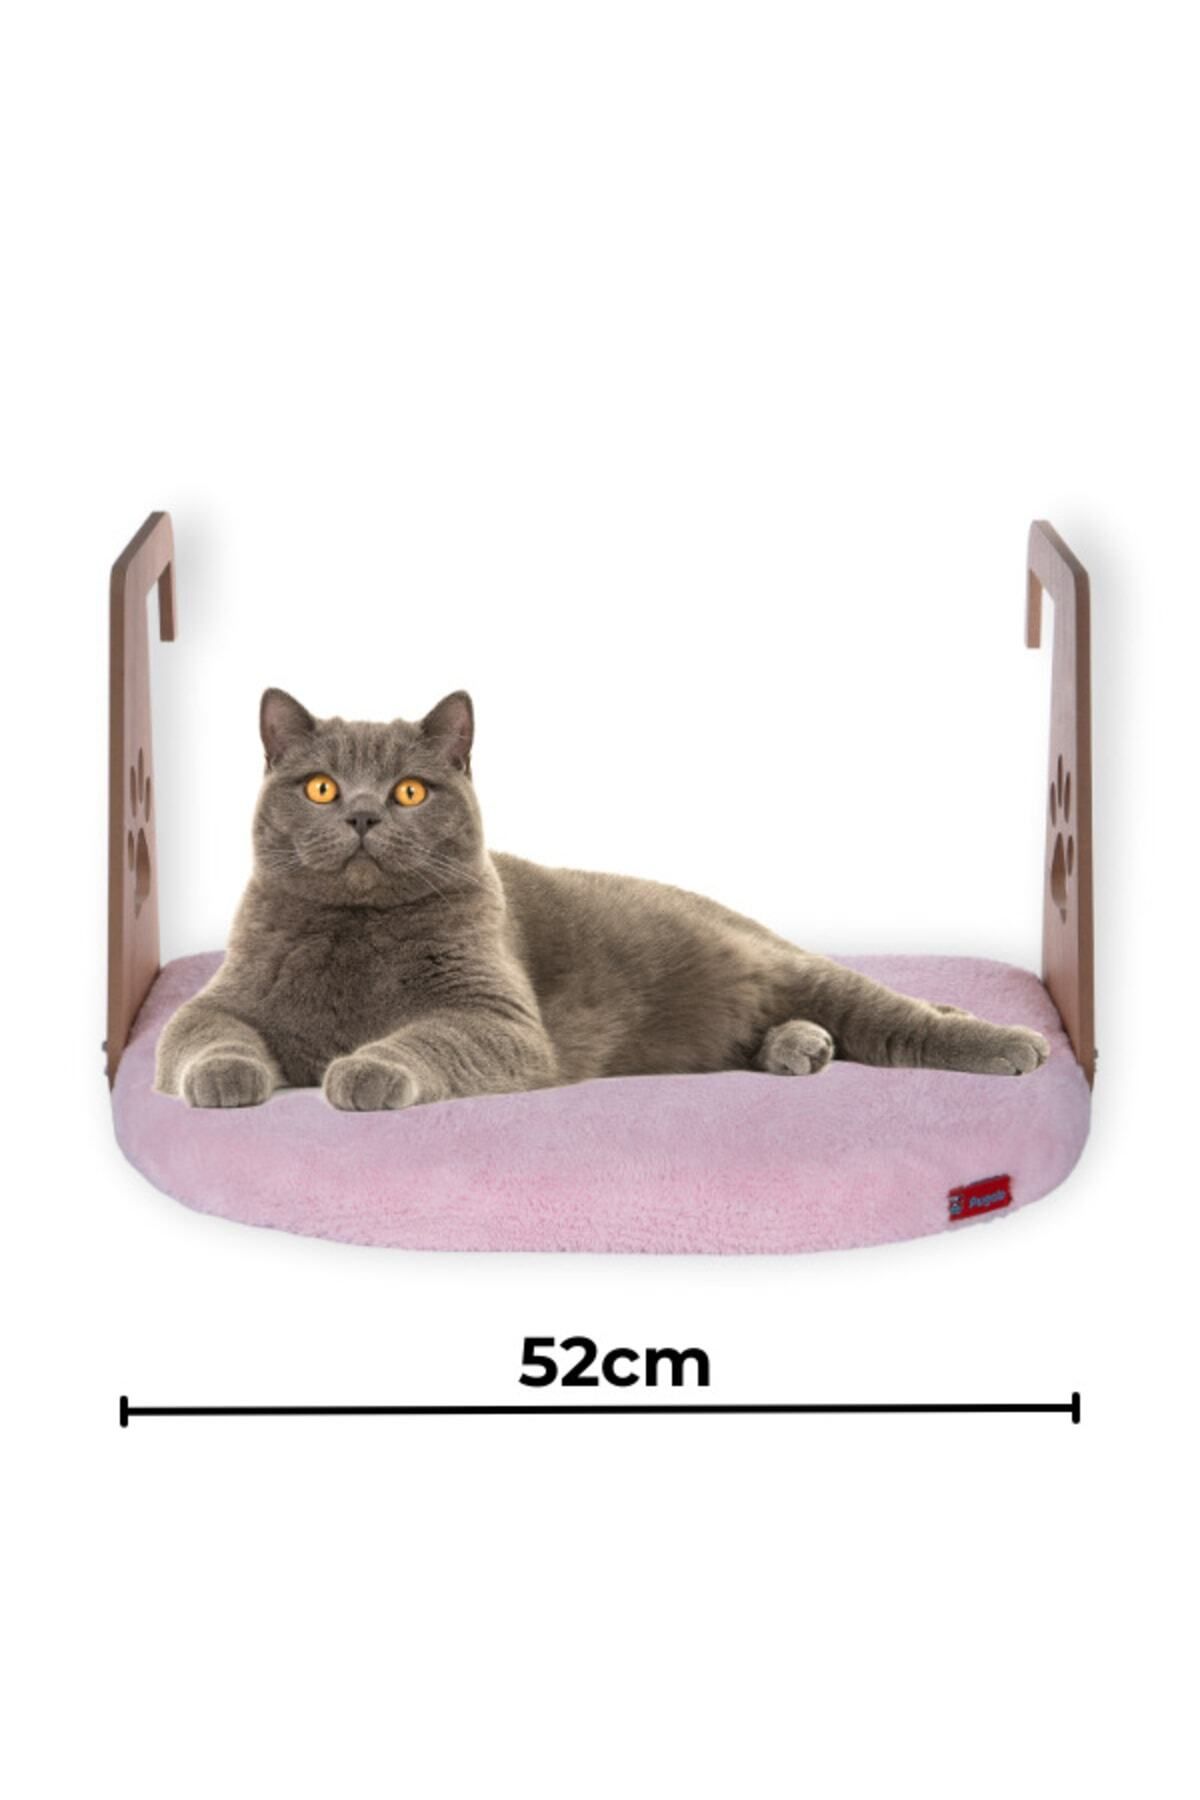 PUGALO Kalorifer Petek Radyatör Yatağı Kedi Köpek Geniş Kalorifer Yatağı Peluş Pembe Renkte